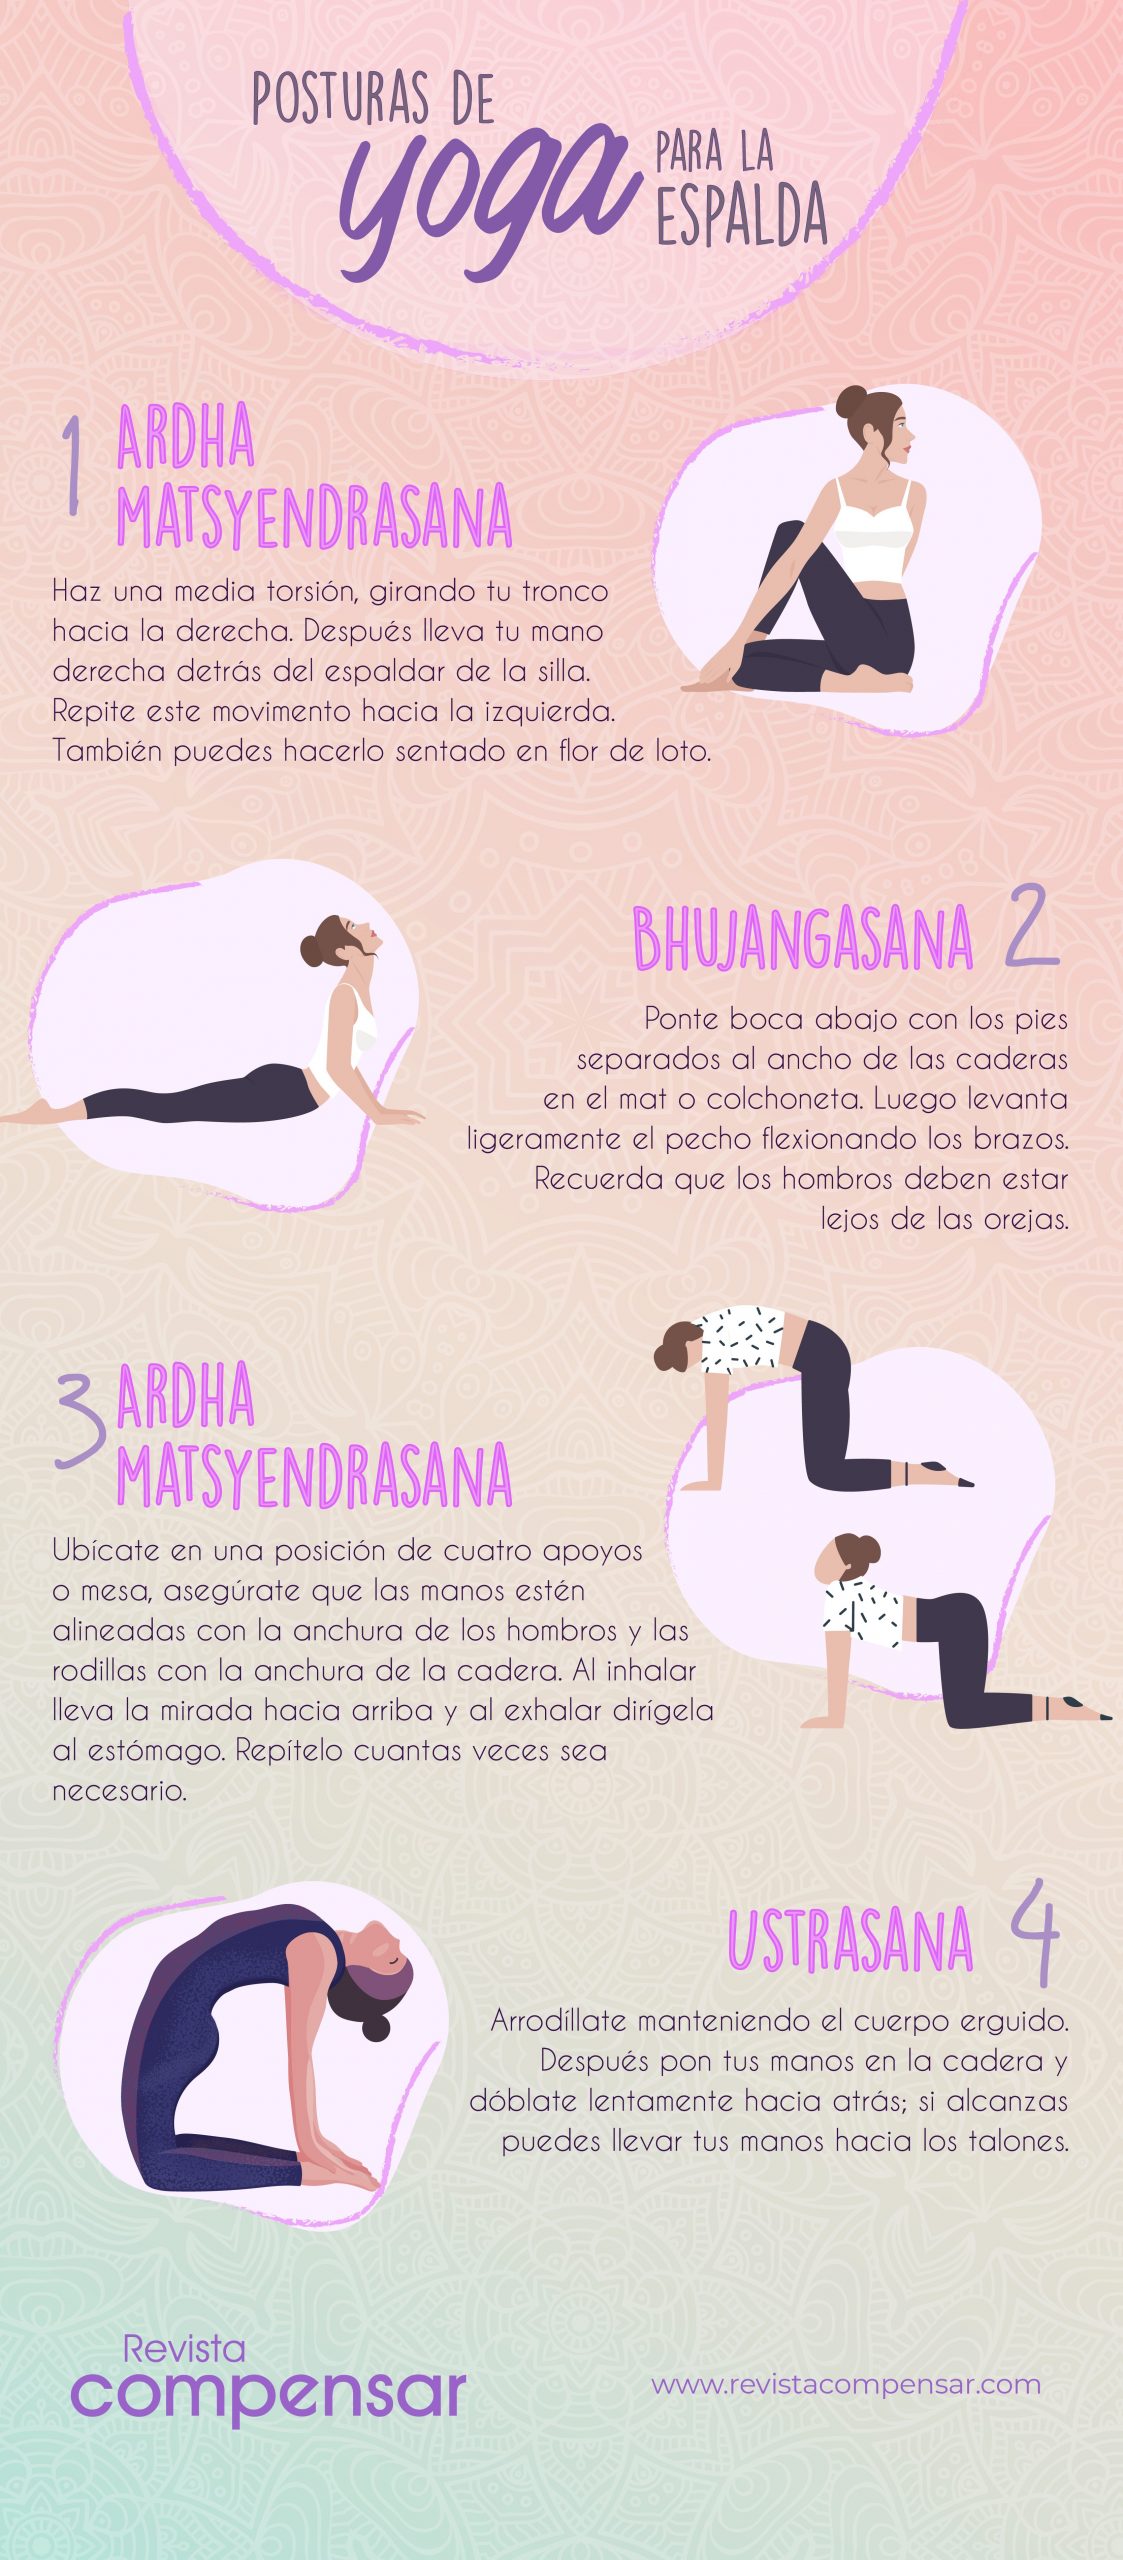 Posturas de yoga para la espalda